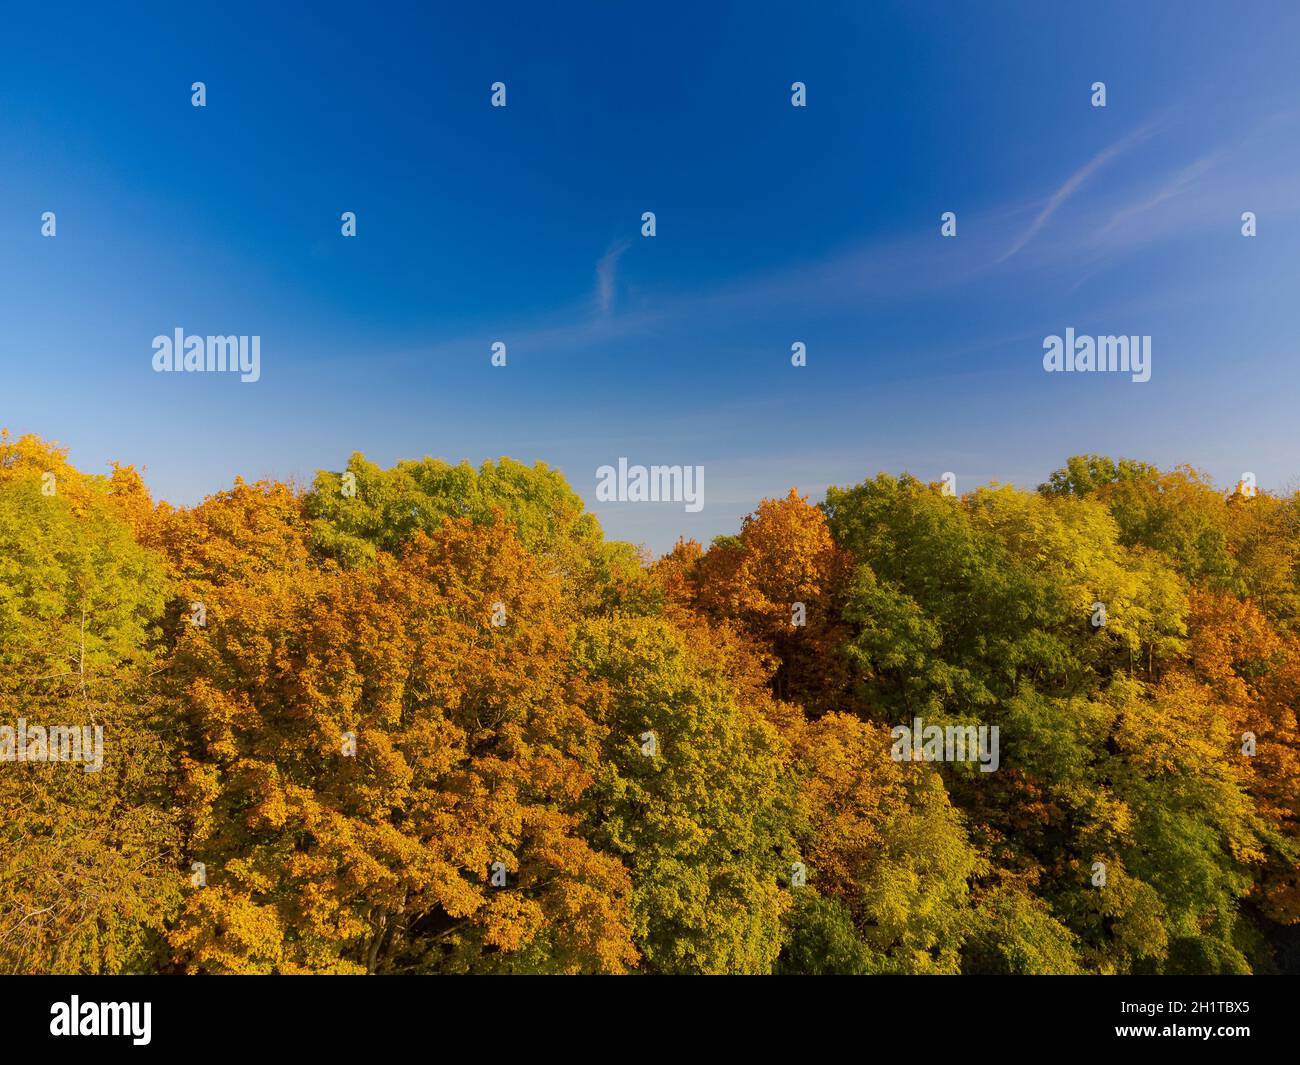 Hermoso colorido follaje de otoño variegado de bosque caducifolio en octubre Foto de stock